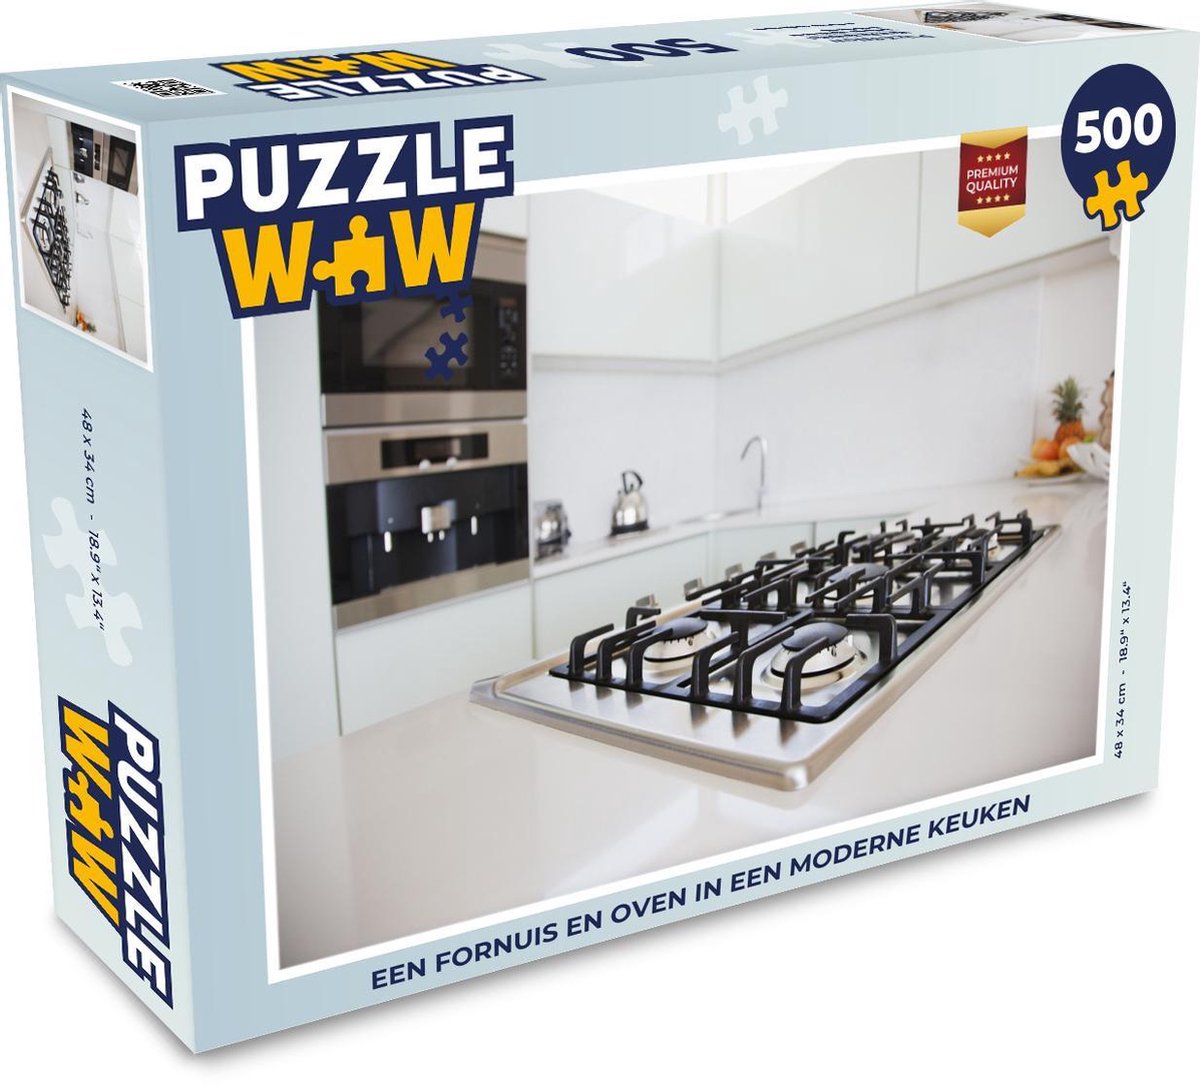 Afbeelding van product Puzzel 500 stukjes Fornuis - Een fornuis en oven in een moderne keuken - PuzzleWow heeft +100000 puzzels